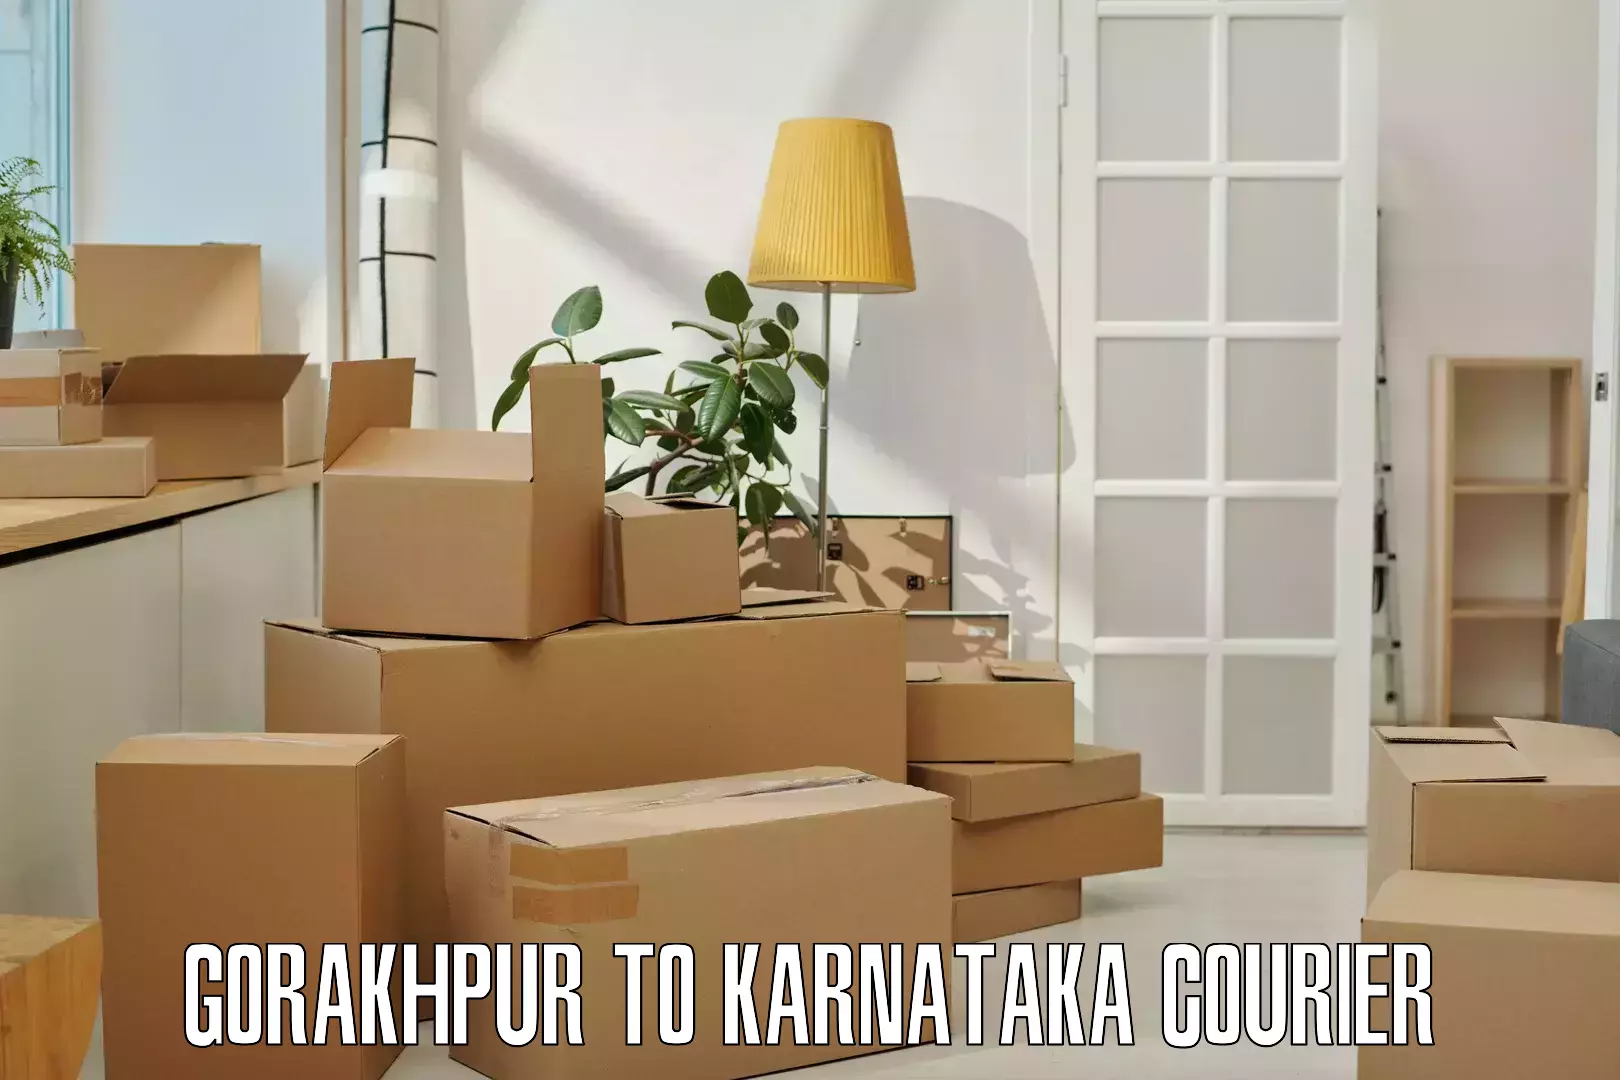 Express package handling Gorakhpur to Karnataka